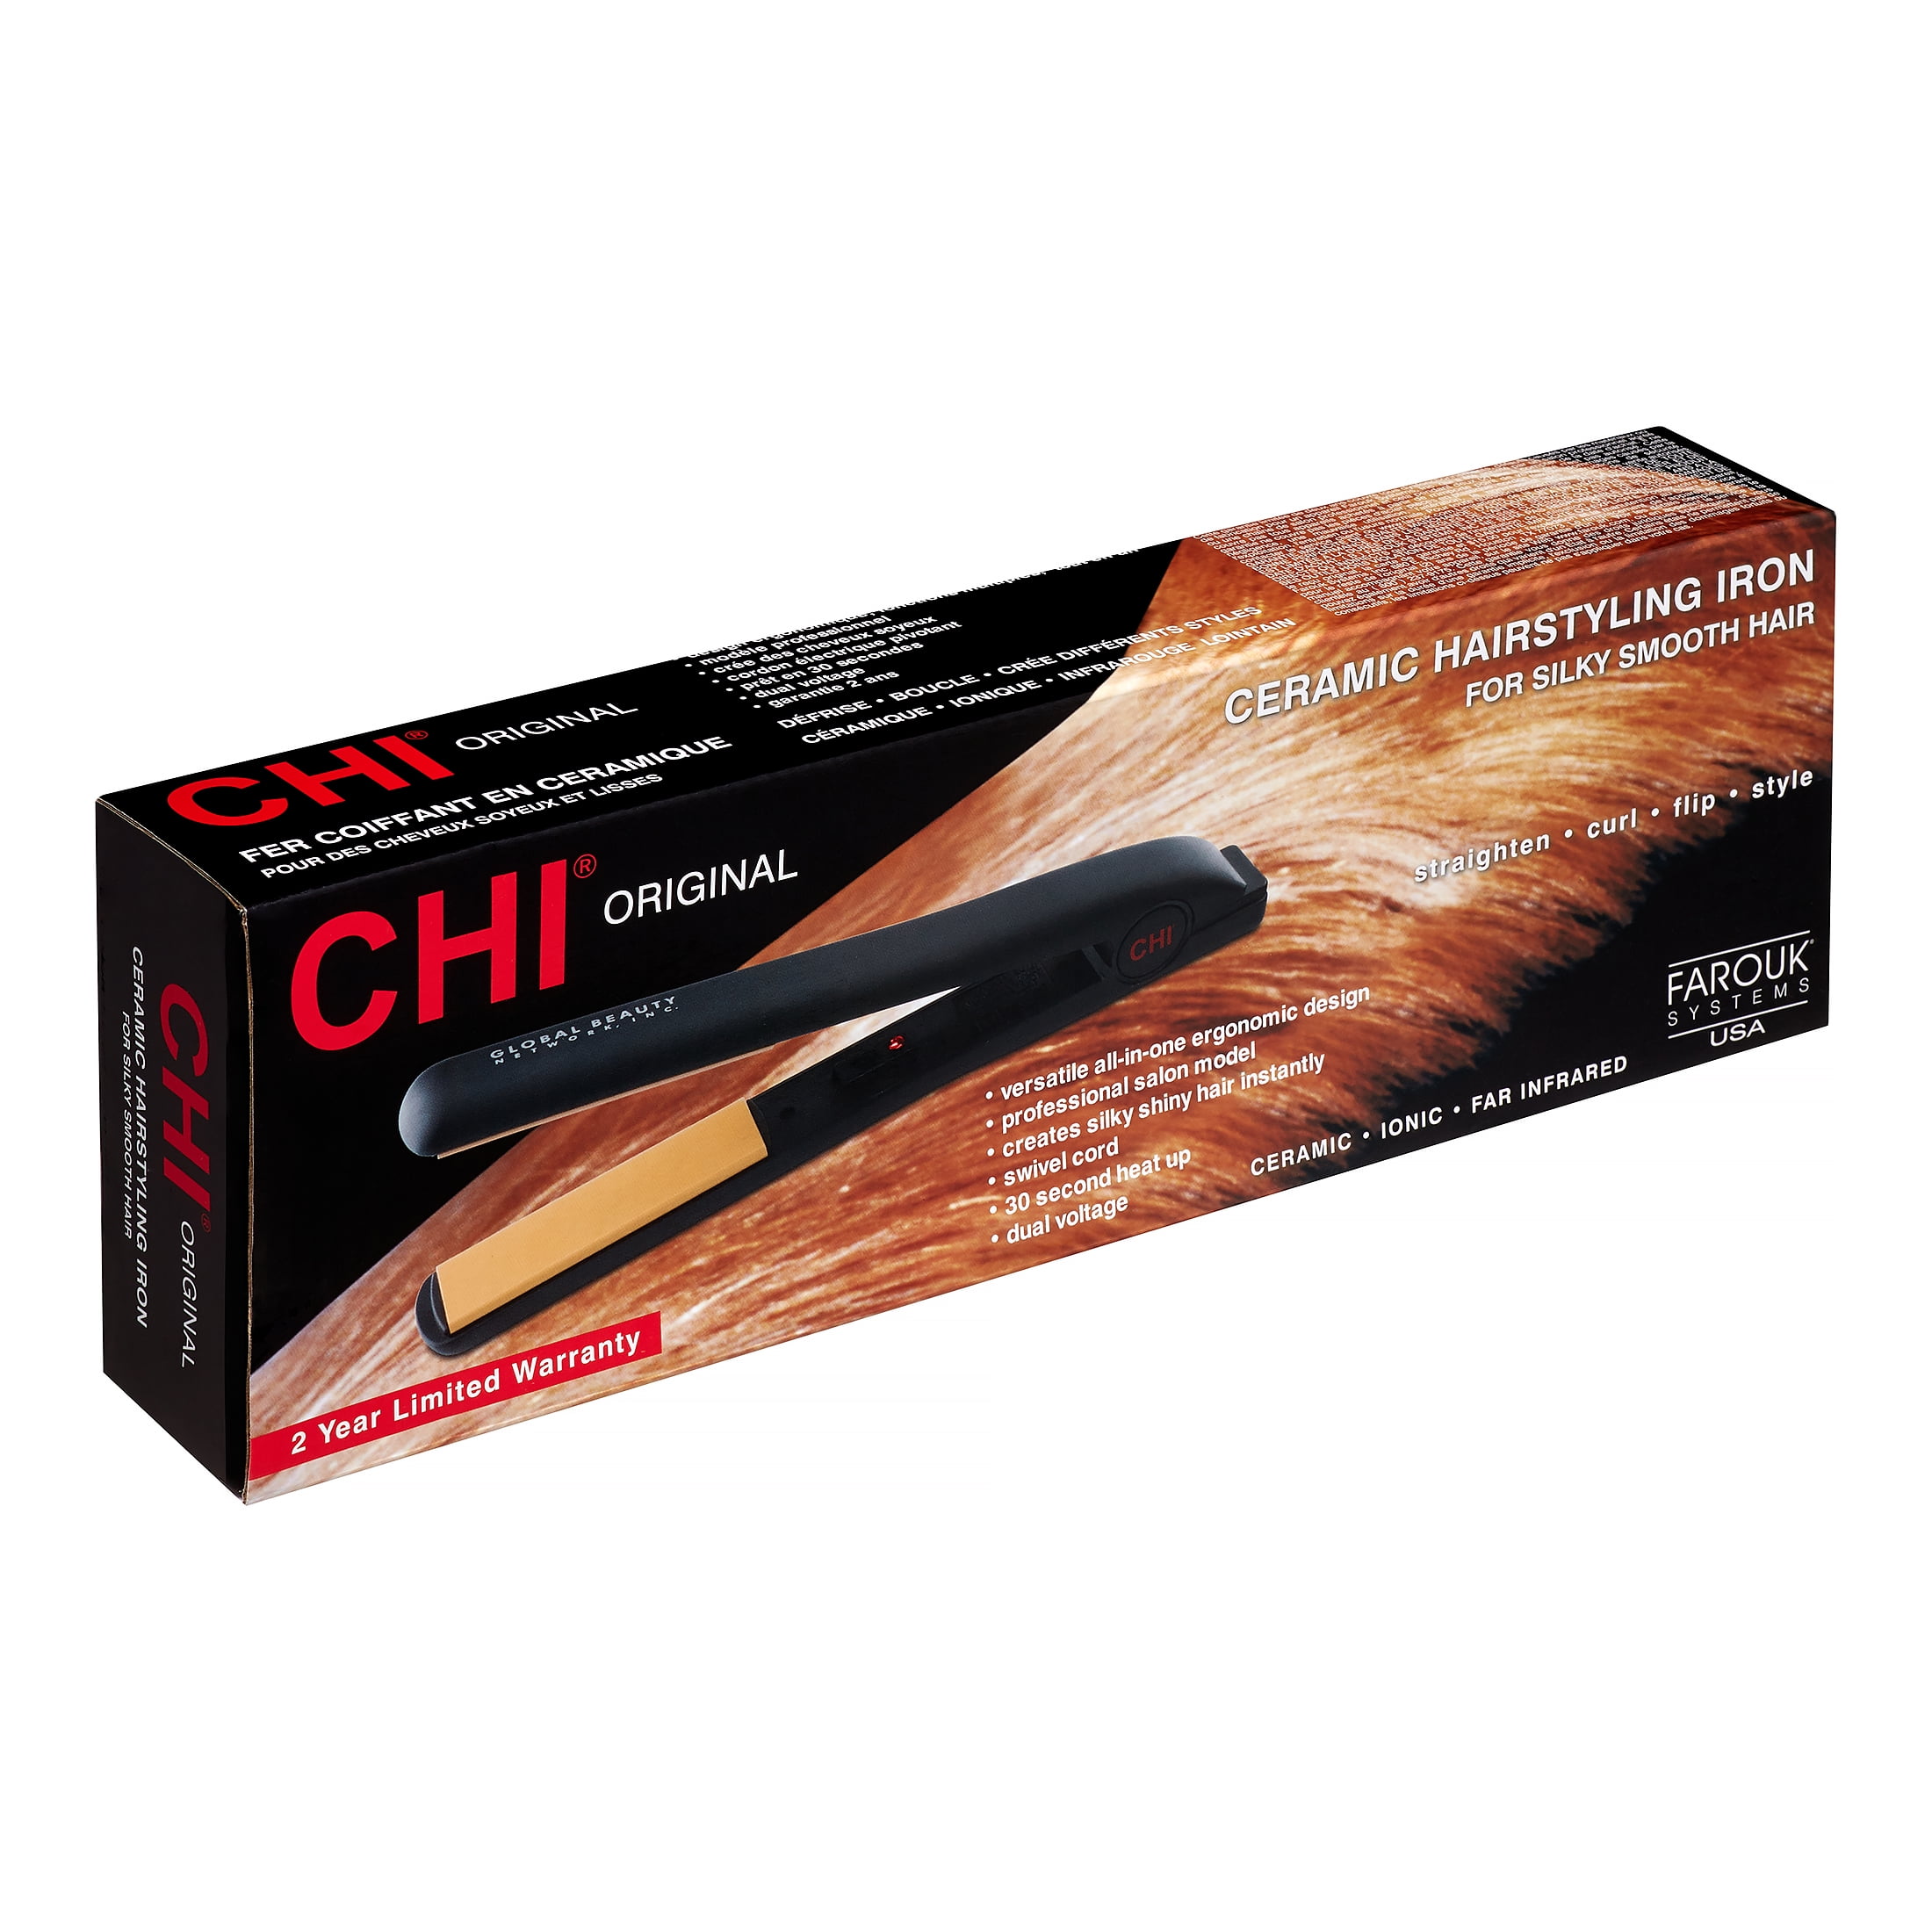  value) CHI Original Ceramic Hair Straightening Flat Iron, 1